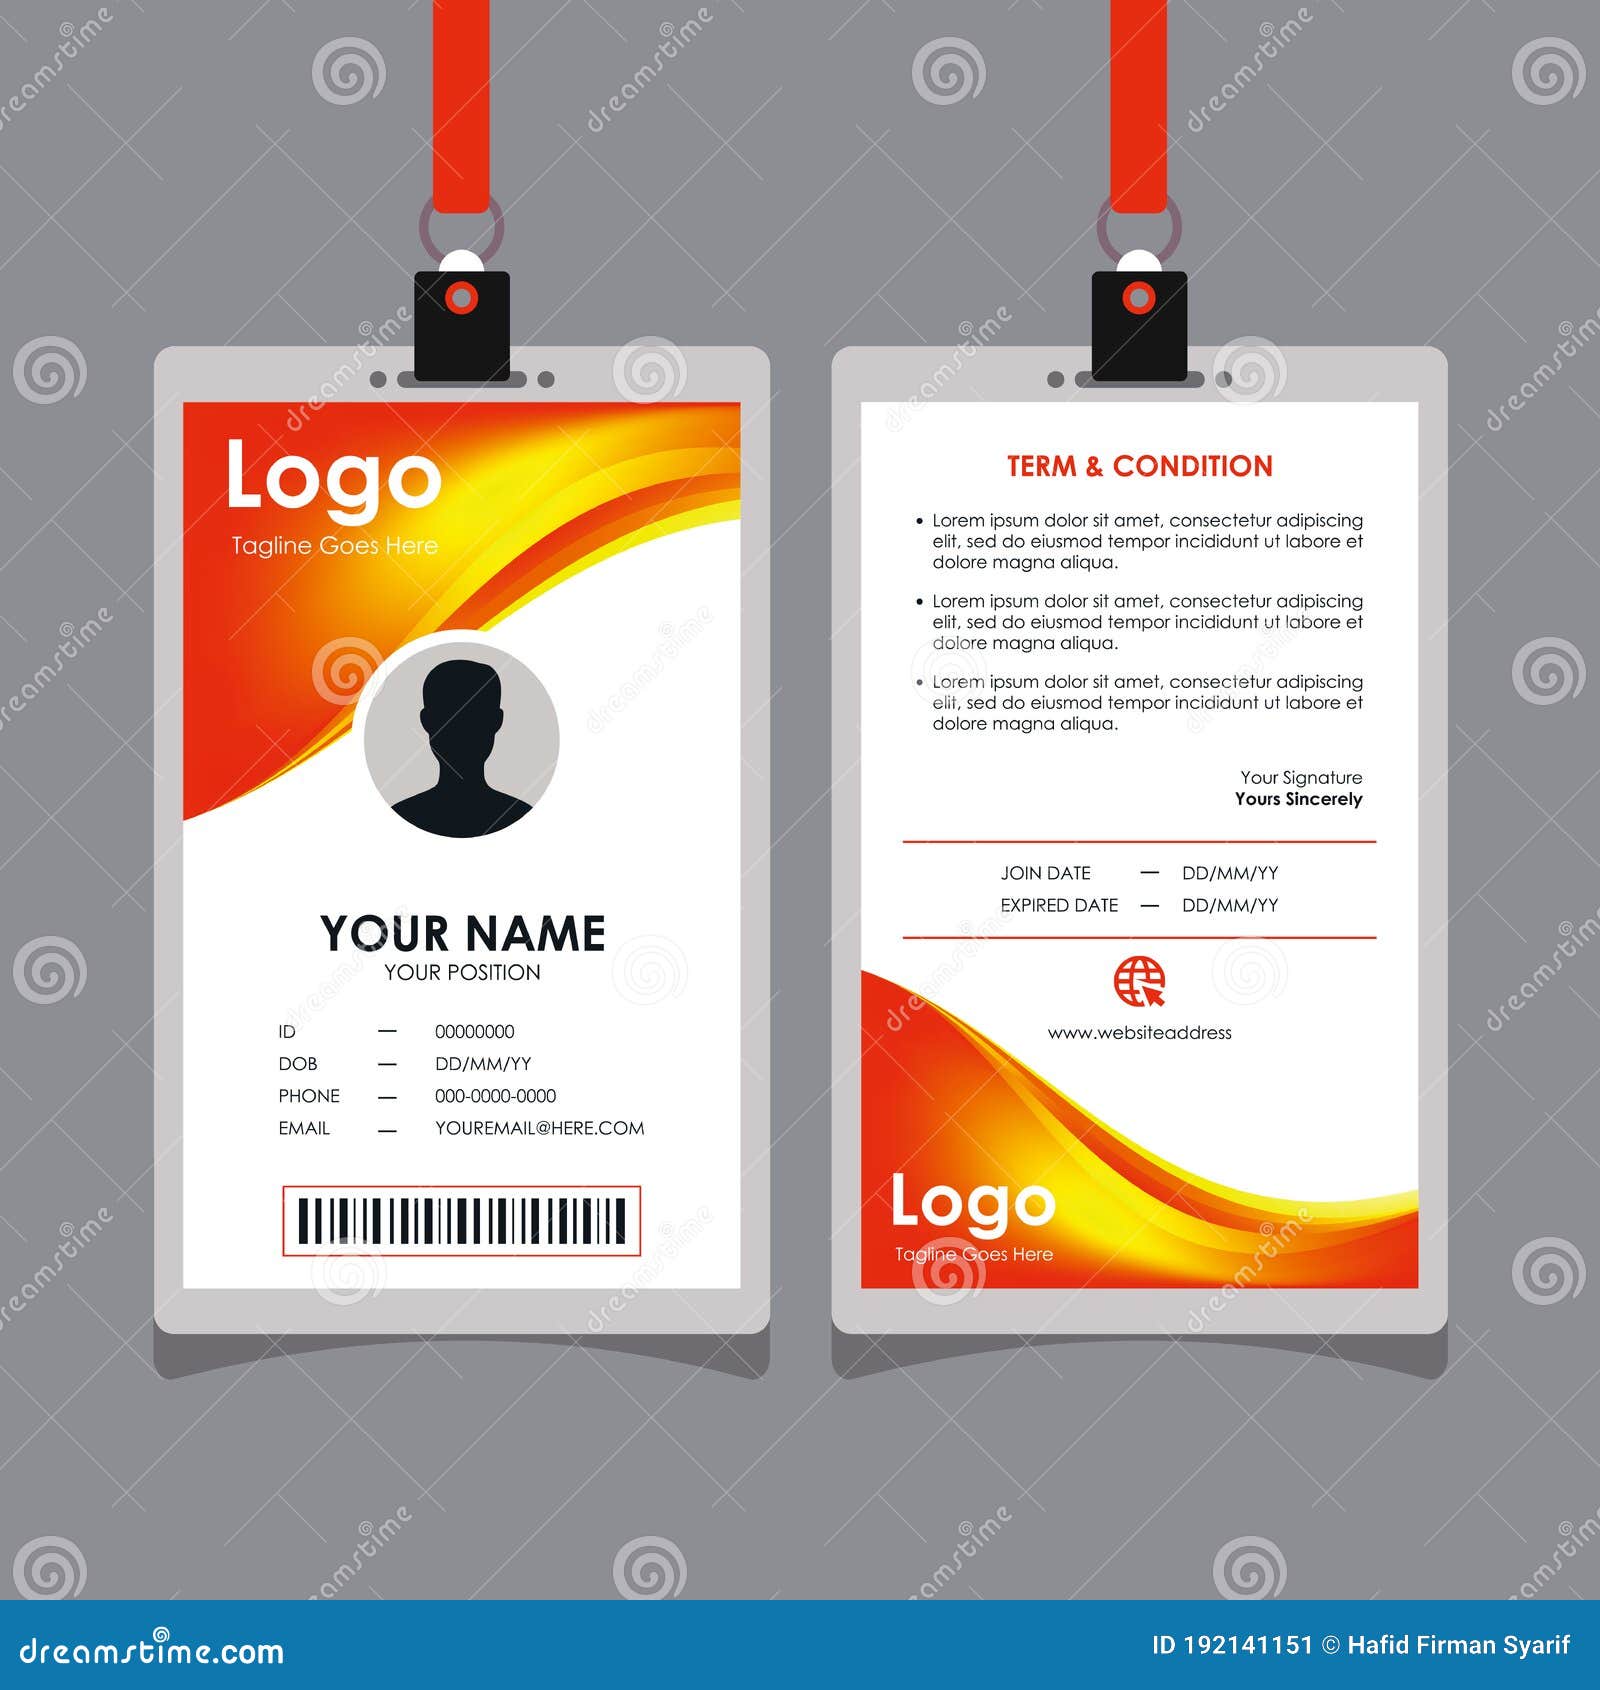 ID Card Template - Có bao giờ bạn cảm thấy khó khăn trong việc thiết kế một chiếc thẻ đăng nhập chuyên nghiệp? Tìm hiểu ngay hình ảnh liên quan đến ID Card Template để có được những ý tưởng thiết kế tuyệt vời. Với đầy đủ các mẫu thiết kế và hướng dẫn sử dụng, bạn sẽ có được một chiếc thẻ đặc biệt, làm bạn nổi bật hơn.